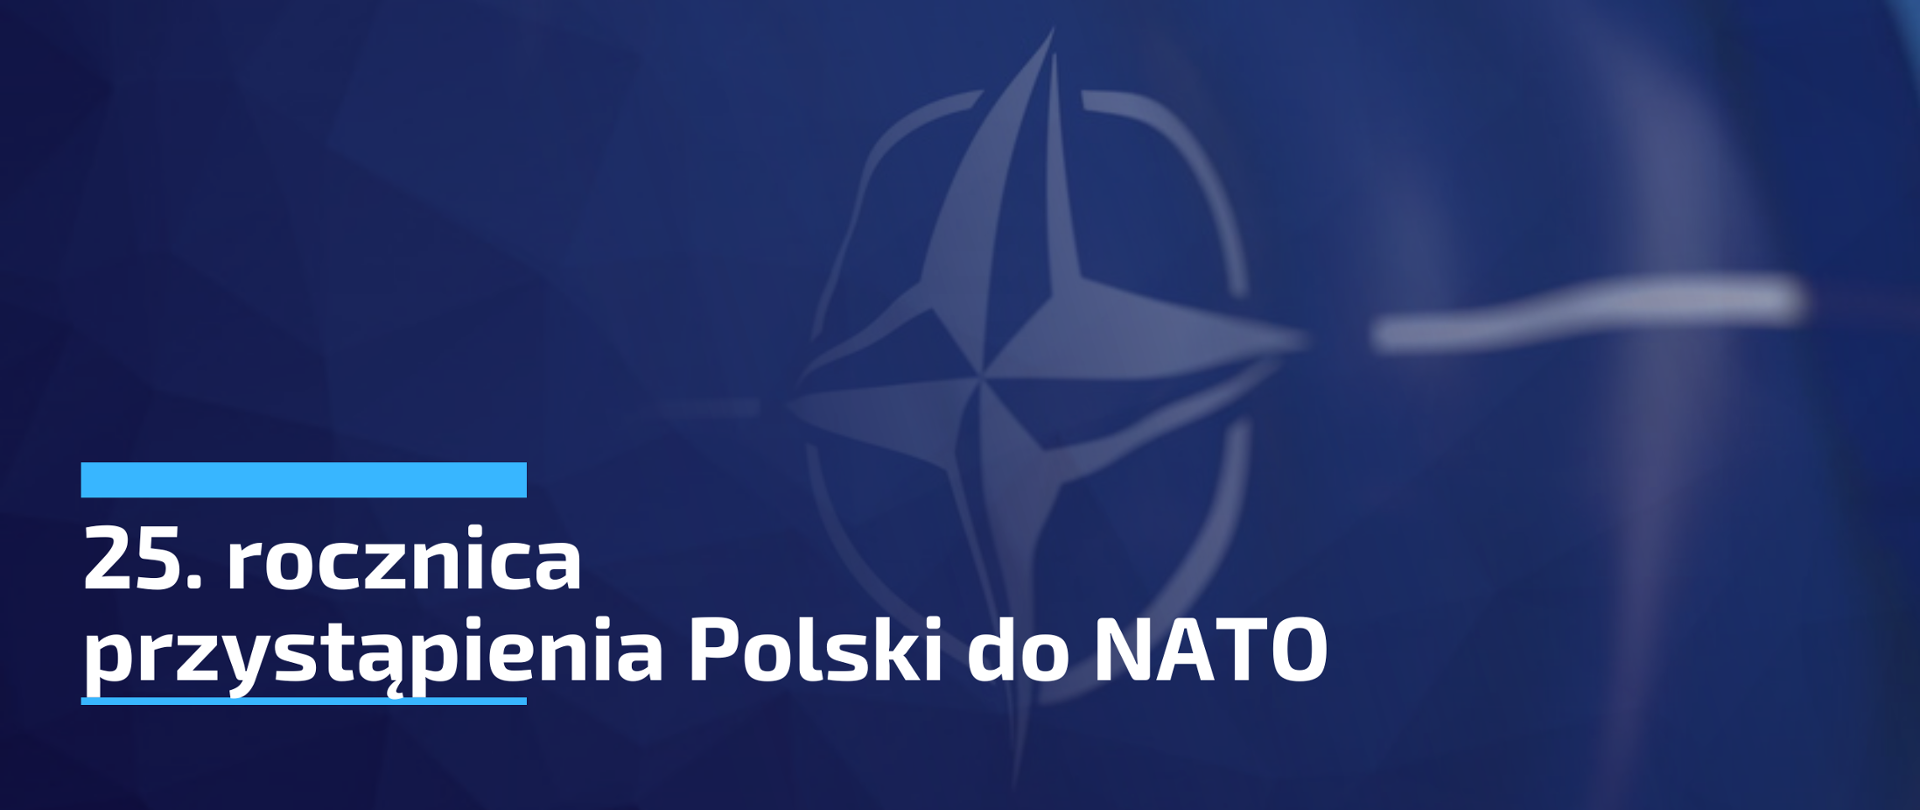 25. rocznica przystąpienia Polski do NATO